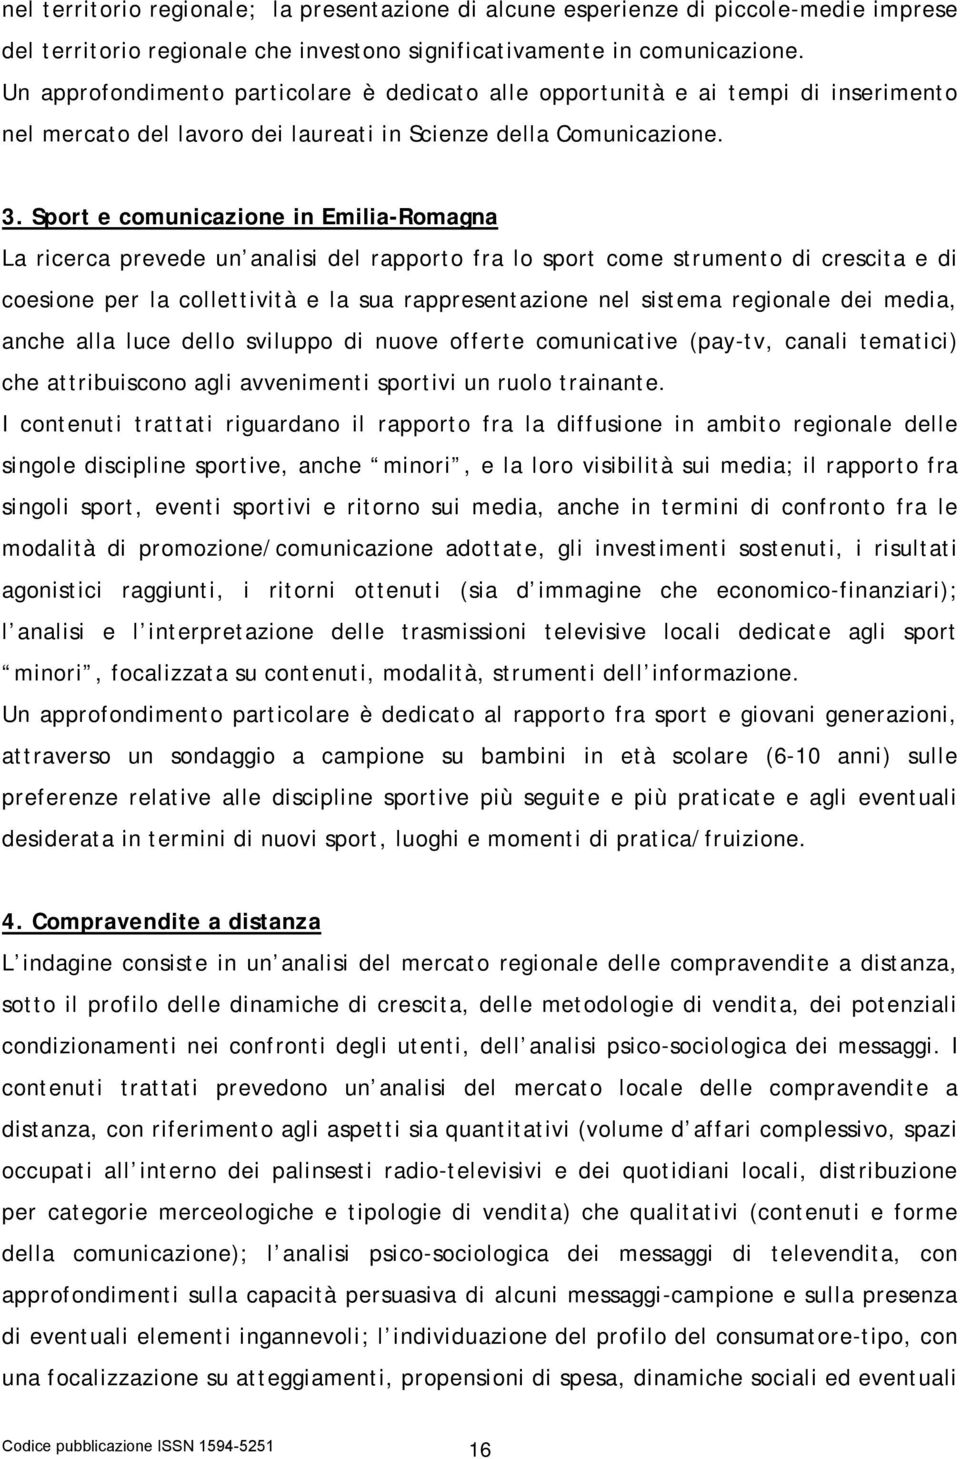 Sport e comunicazione in Emilia-Romagna La ricerca prevede un analisi del rapporto fra lo sport come strumento di crescita e di coesione per la collettività e la sua rappresentazione nel sistema